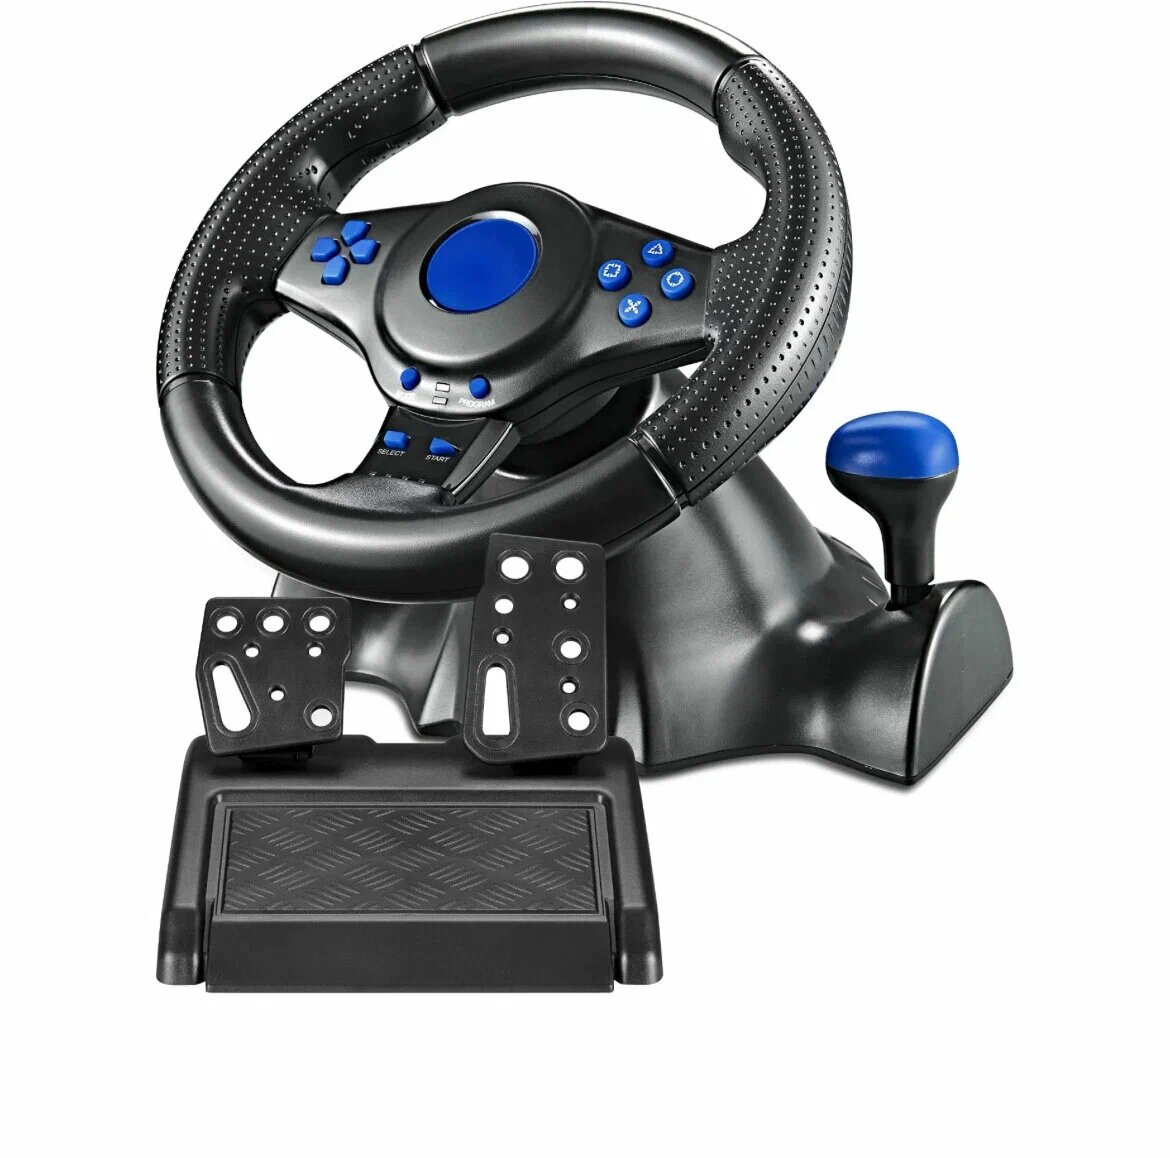 Игровой руль GT-V 7 для компьютера  ПК Xbox One PS4 PS3 Android / Гоночный симулятор вождения с педалями и рулём